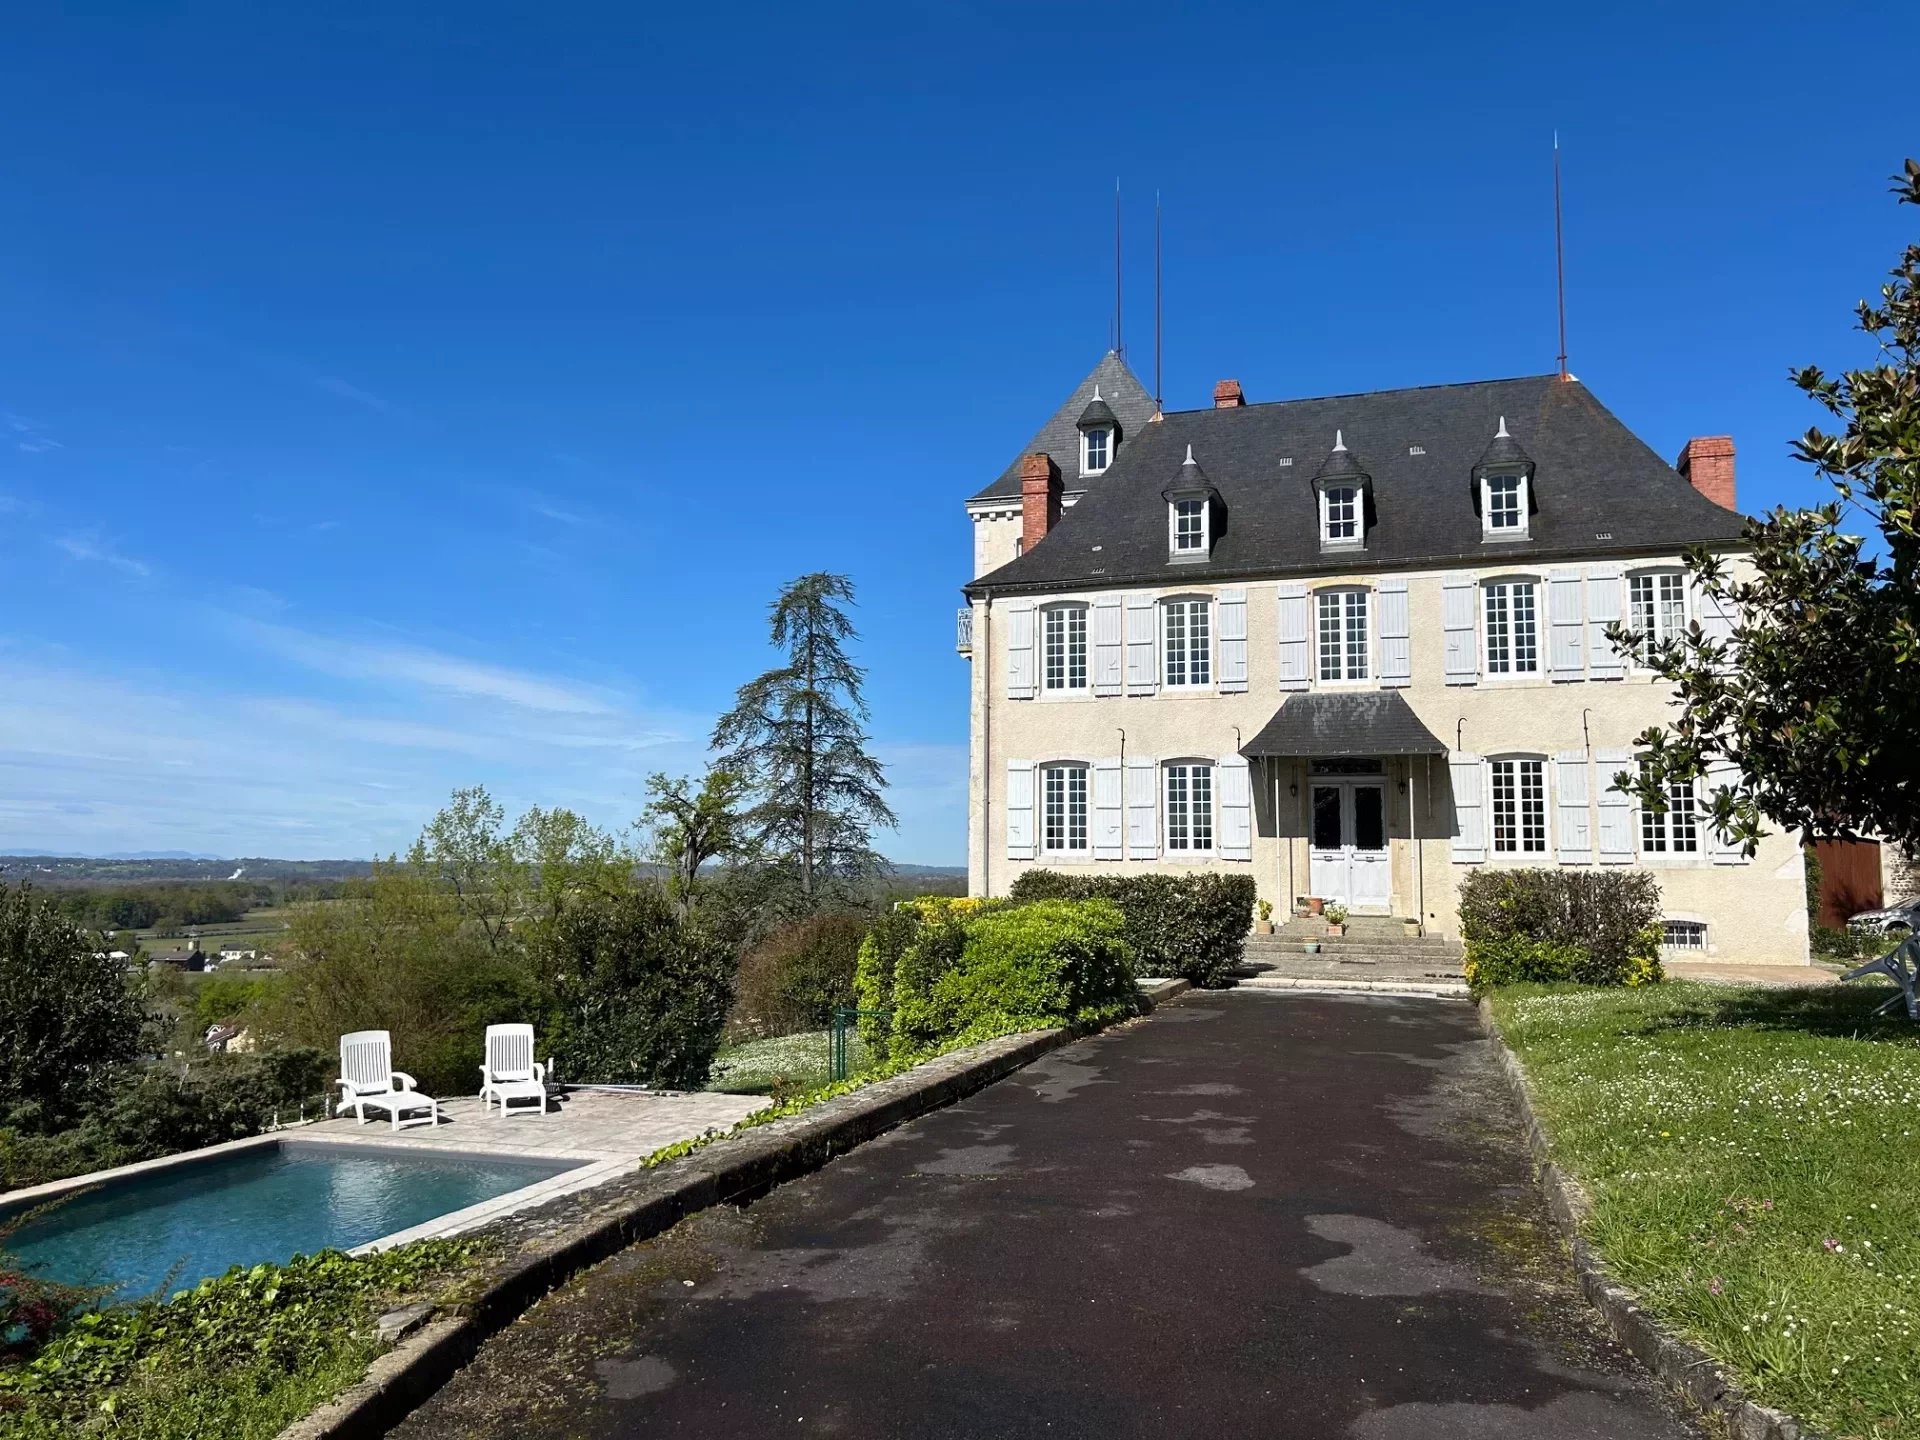 Elegant Château avec une vue spectaculaire de la chaîne des Pyrénées